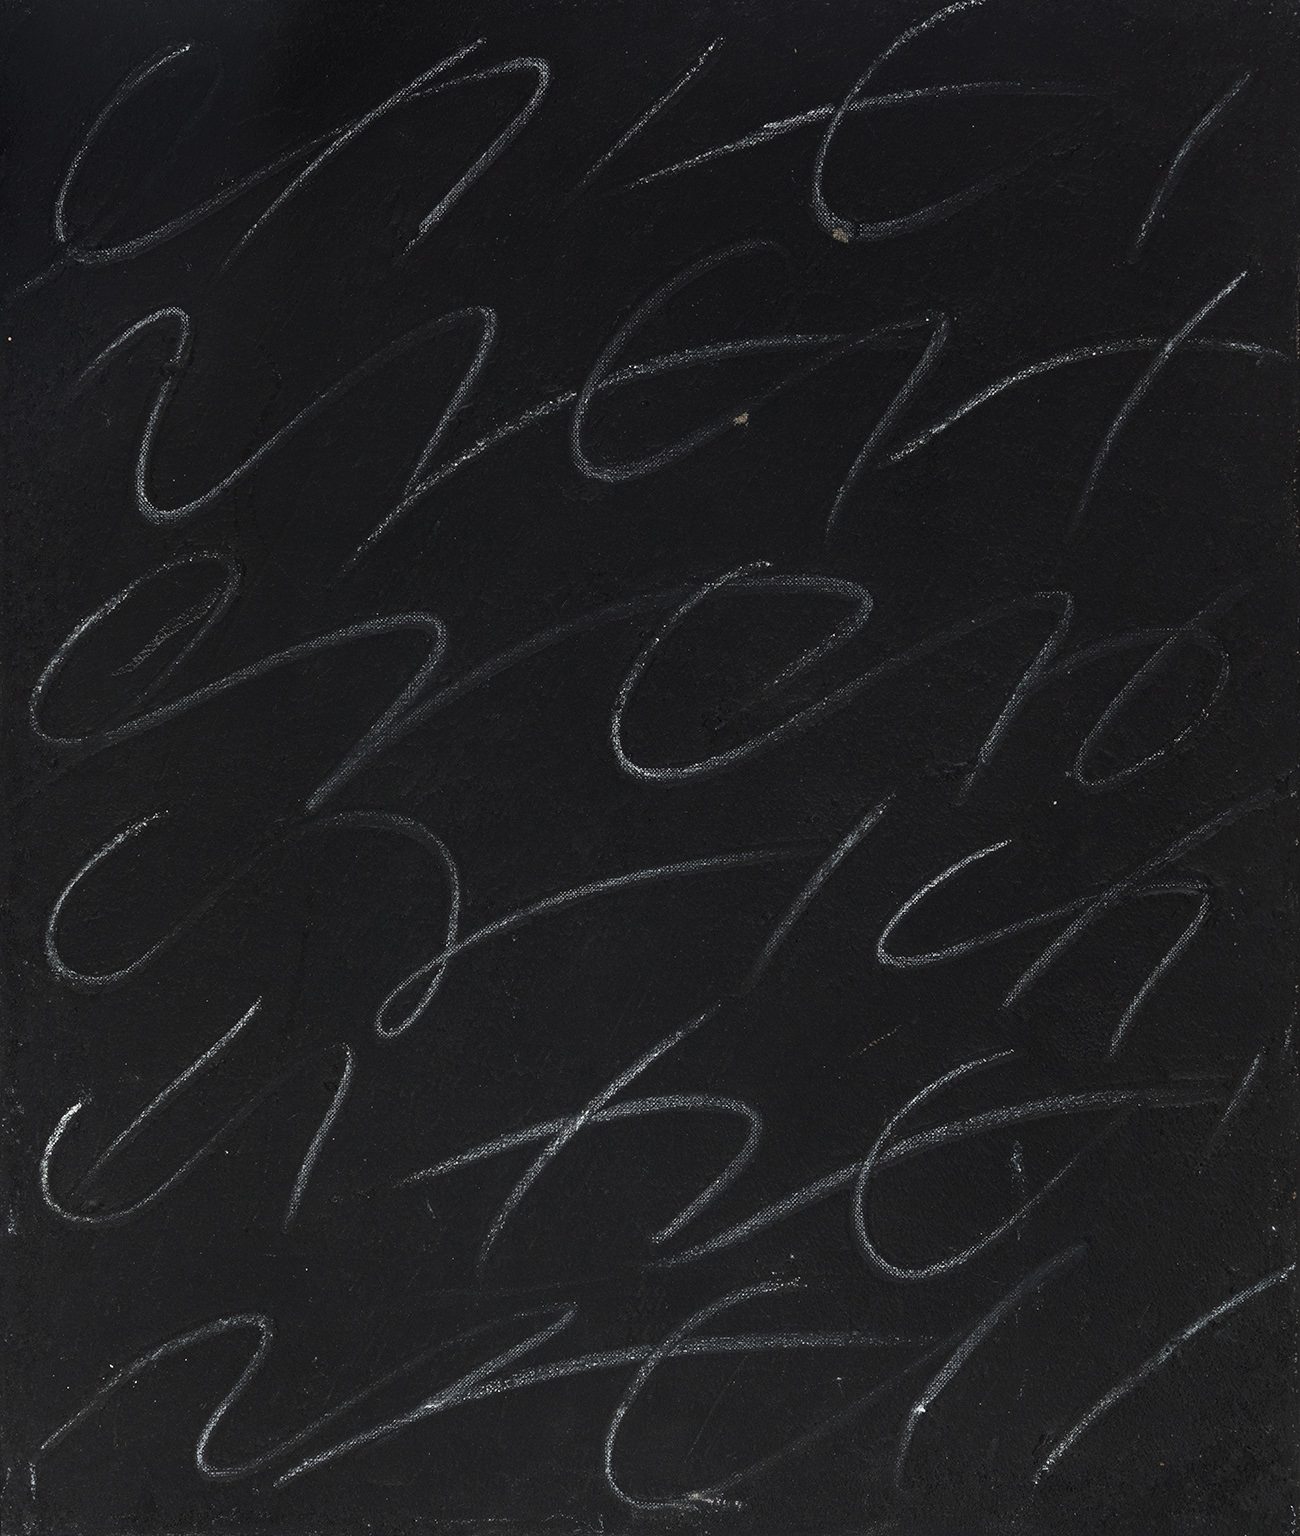 JOAQUIM CHANCHO (Riudoms, Tarragona, 1943)."Petit esgrafiat negre", 1975.Mixed media on canvas.